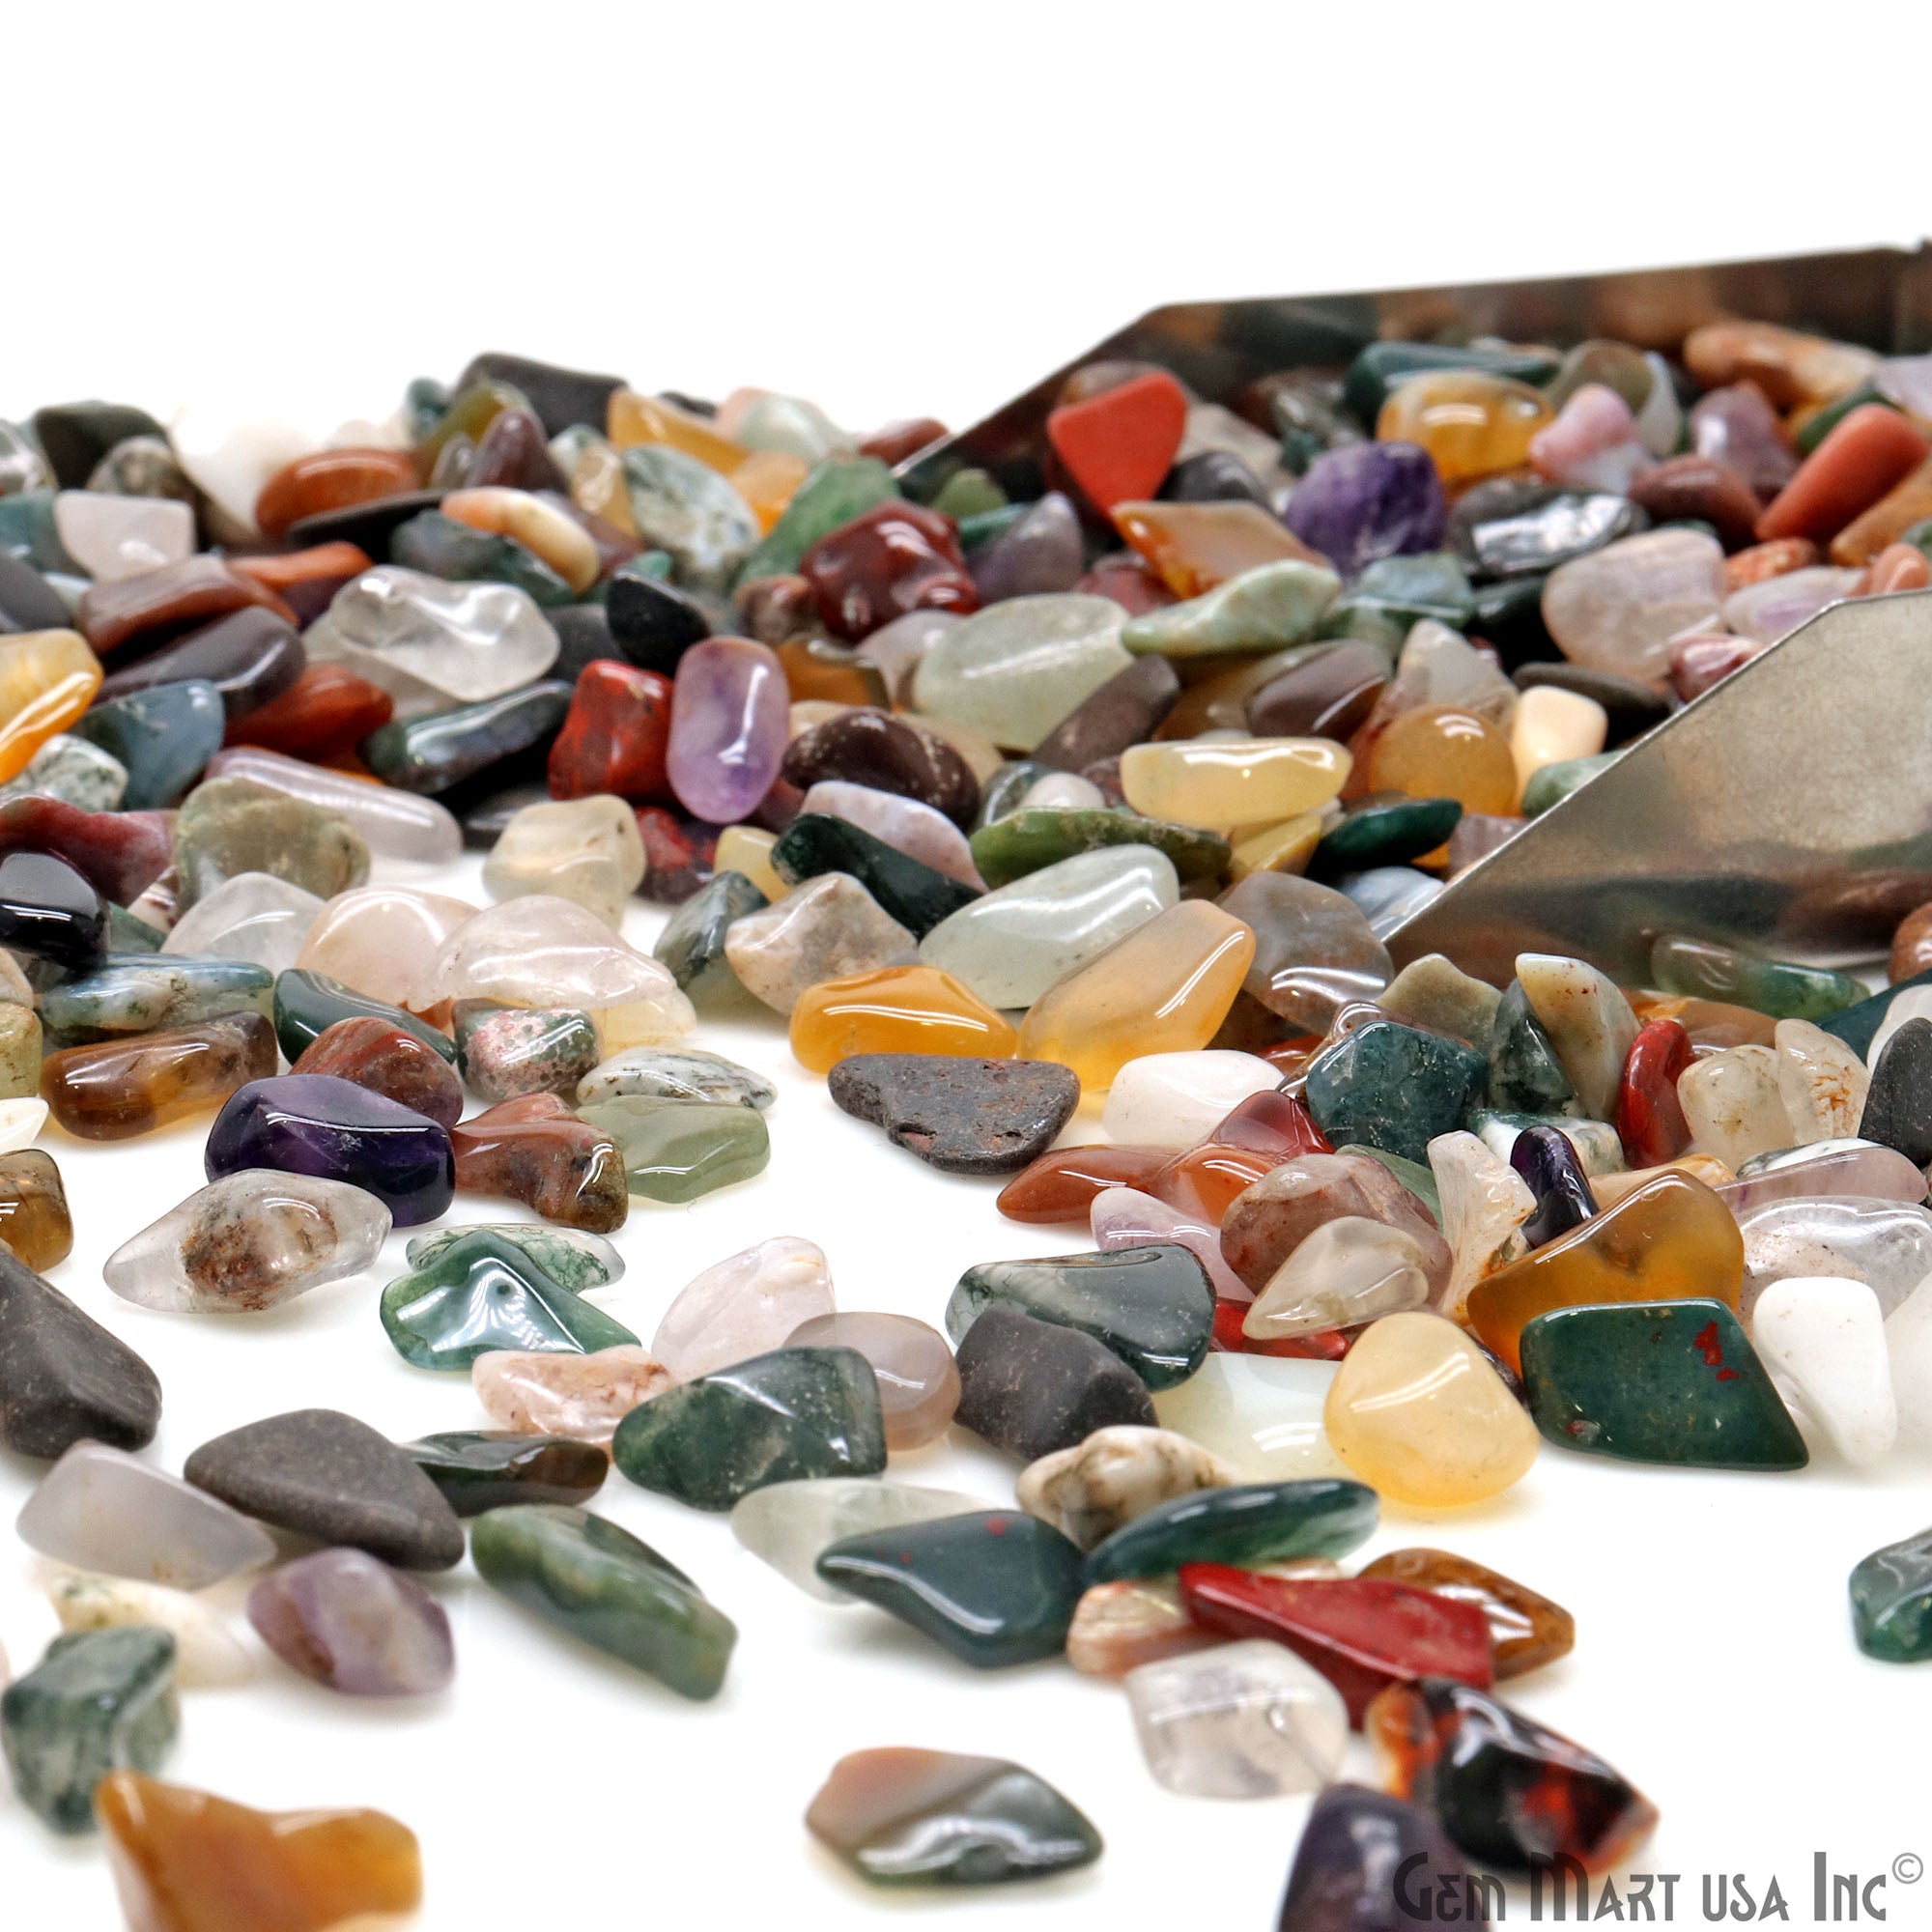 Gemstones for Sale: Buy Loose Stones